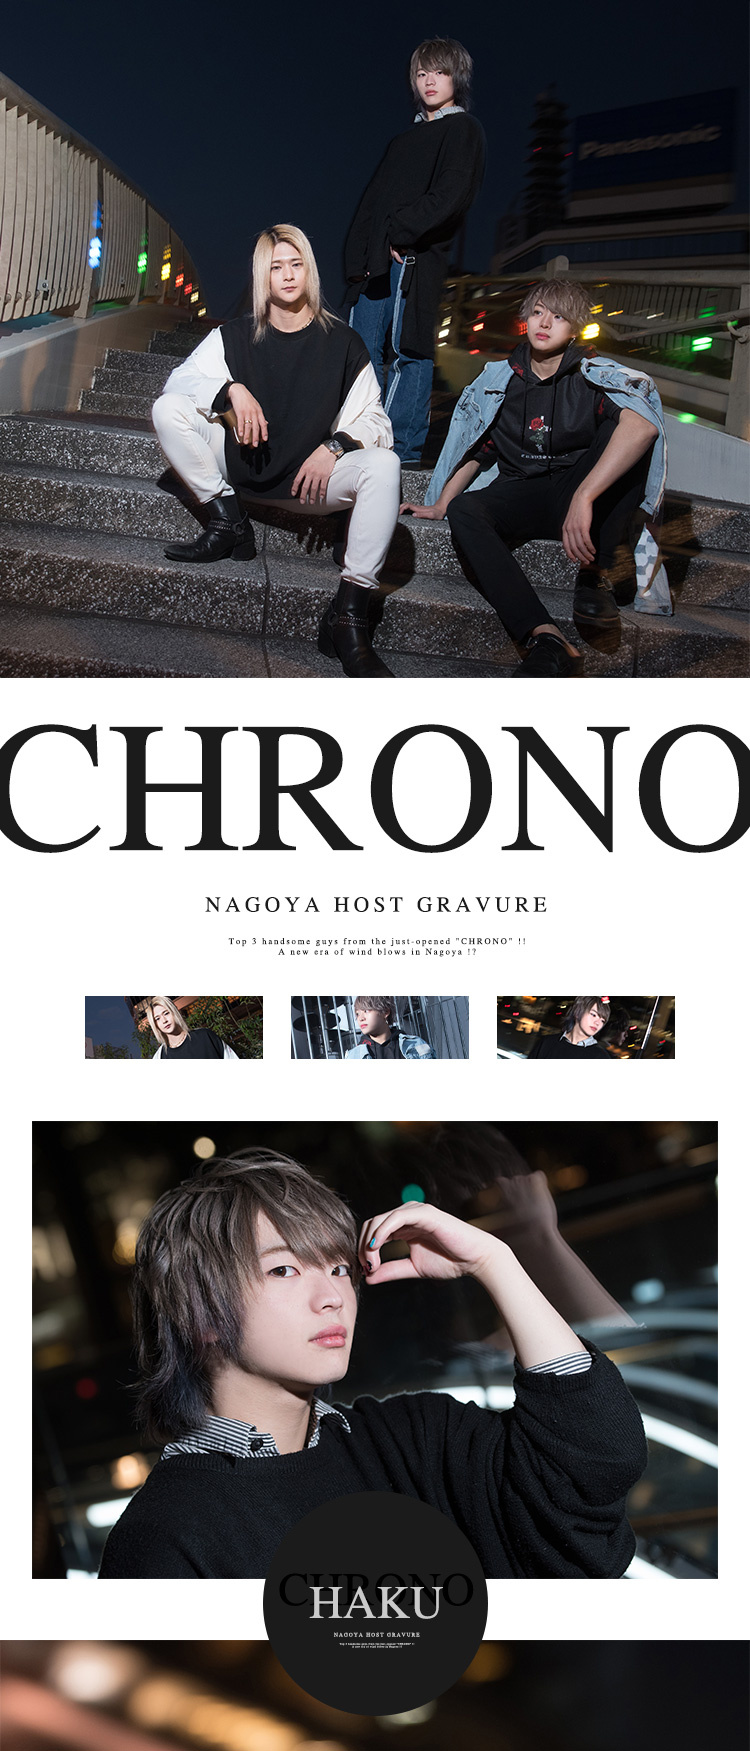 完全新規店「CHRONO」オープン!!